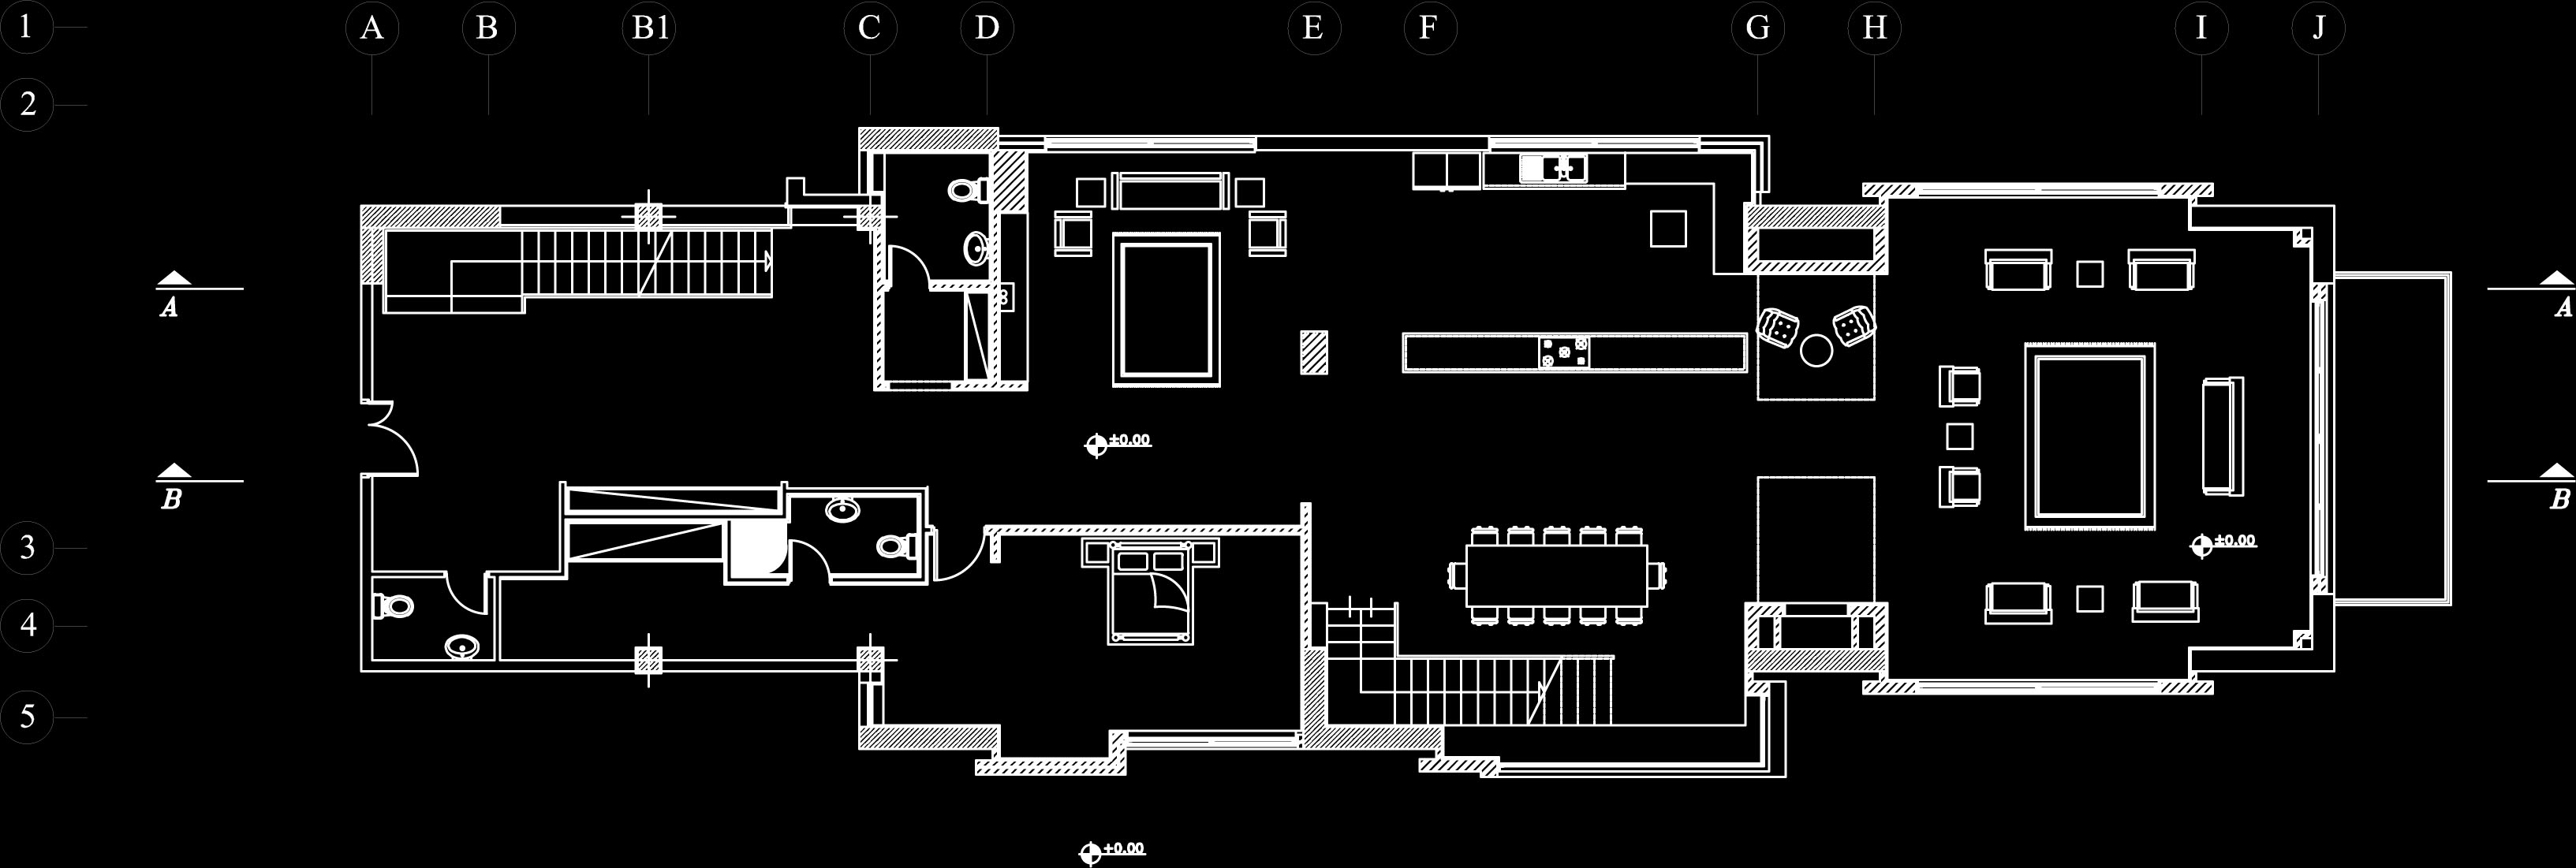 نقشه های معماری مسکونی